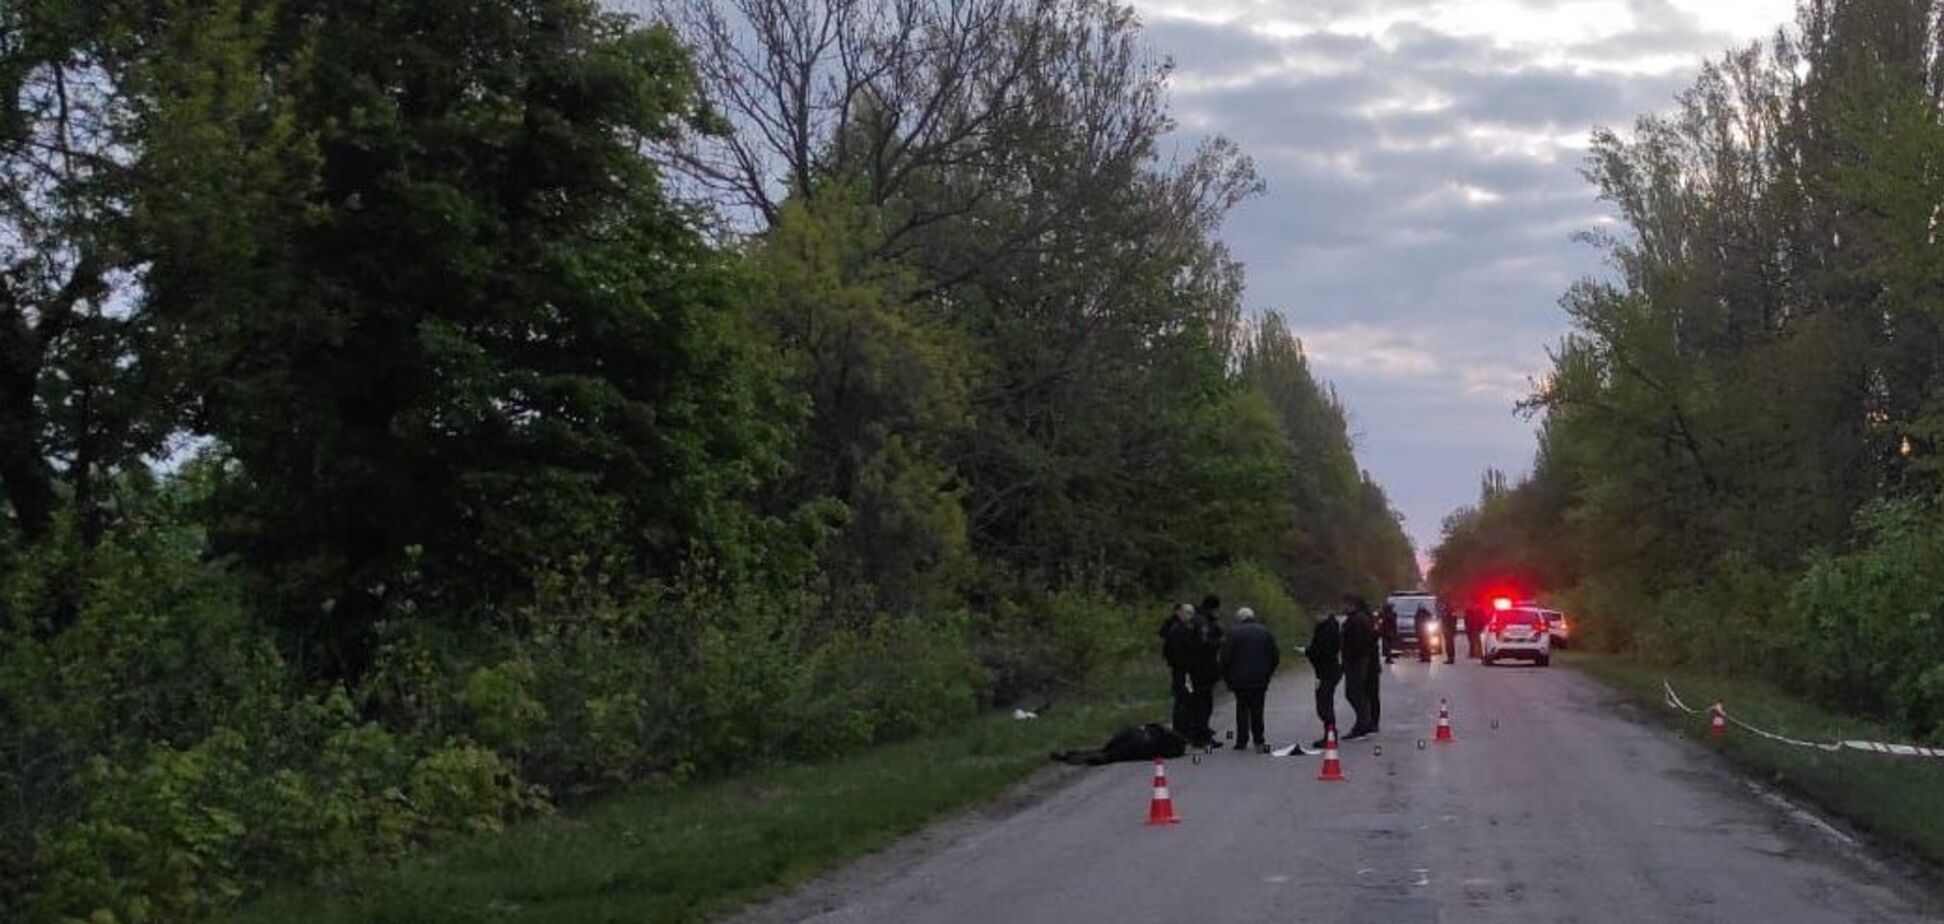 Появились данные о втором полицейском, который был ранен во время нападения в Винницкой области